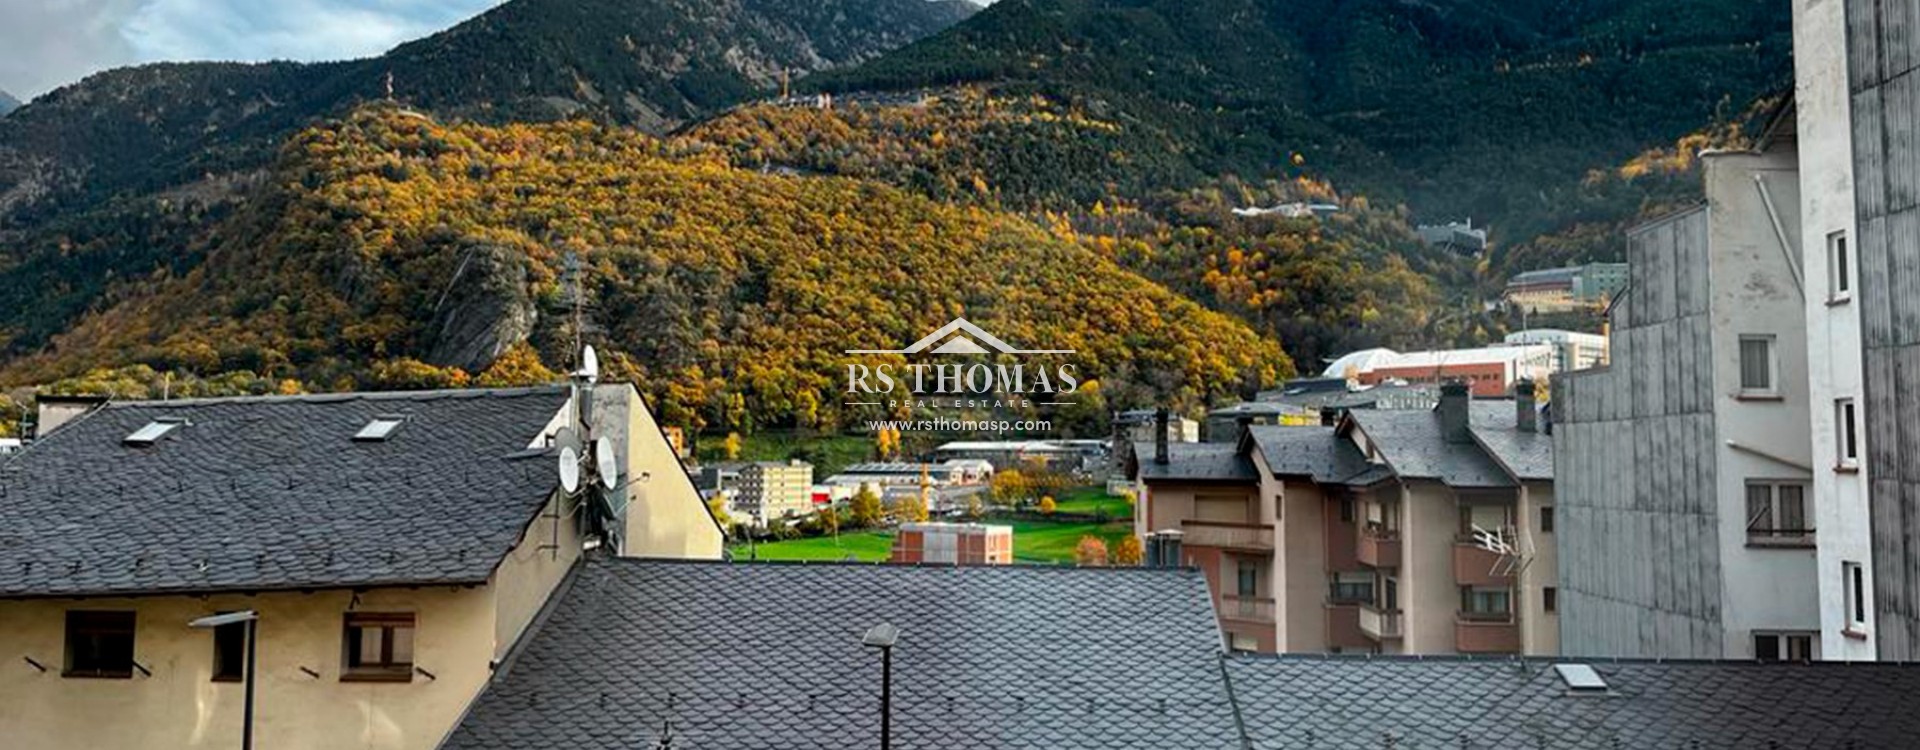 Pis per comprar Andorra La Vella